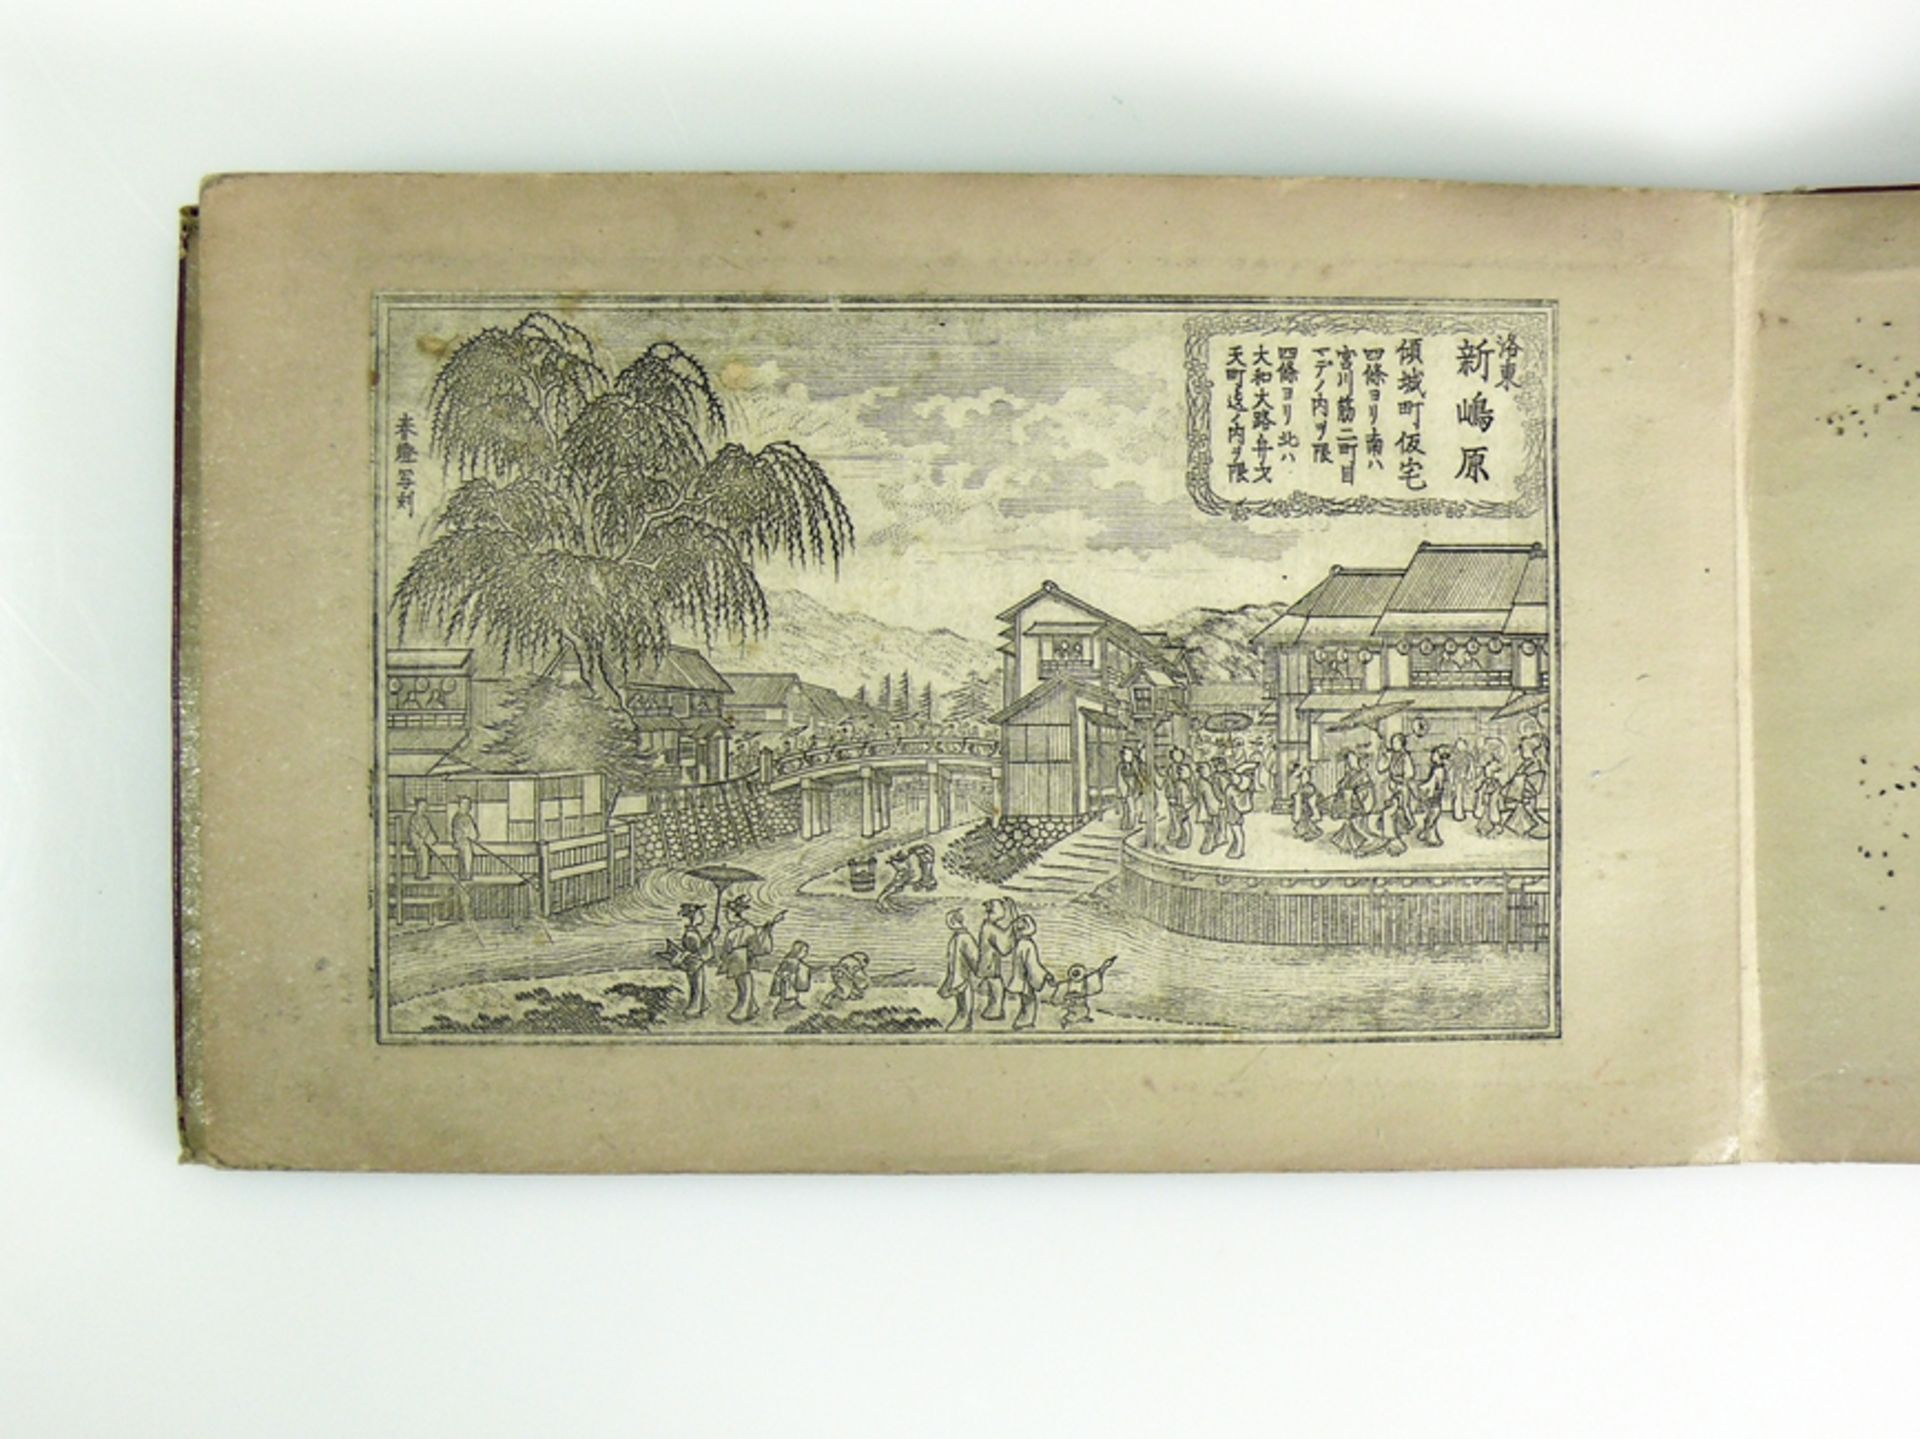 Kleines Buch (China, vor 1840, Qianlong-Daogung) - Image 22 of 22